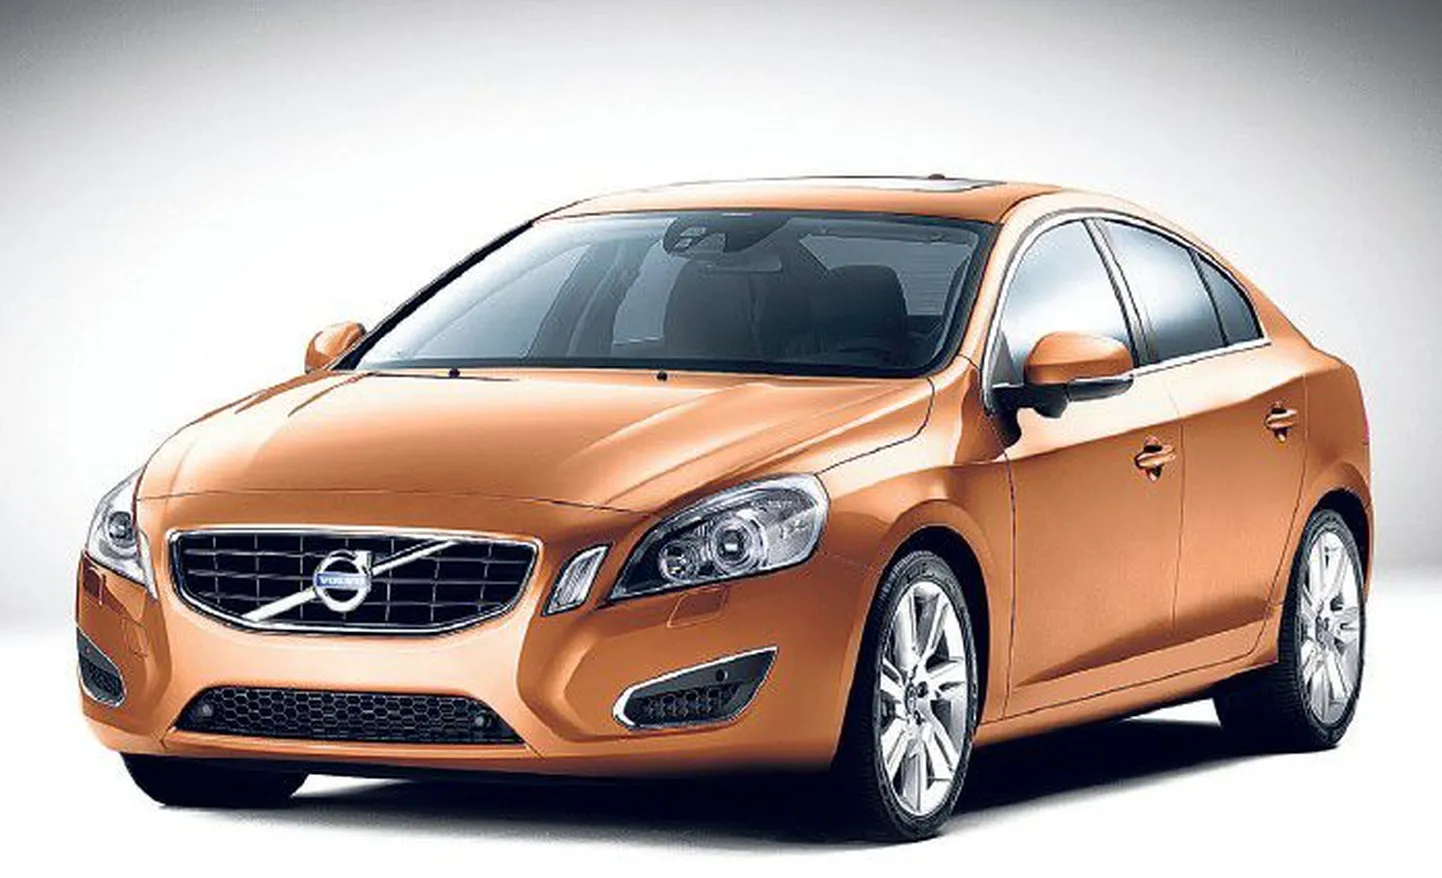 Эффектный бронзовый цвет концепт-кара, совершенно нехарактерный для консервативного шведского автопроизводителя Volvo, тоже призван обозначить принципиально новую тенденцию в дизайне автомобилей.